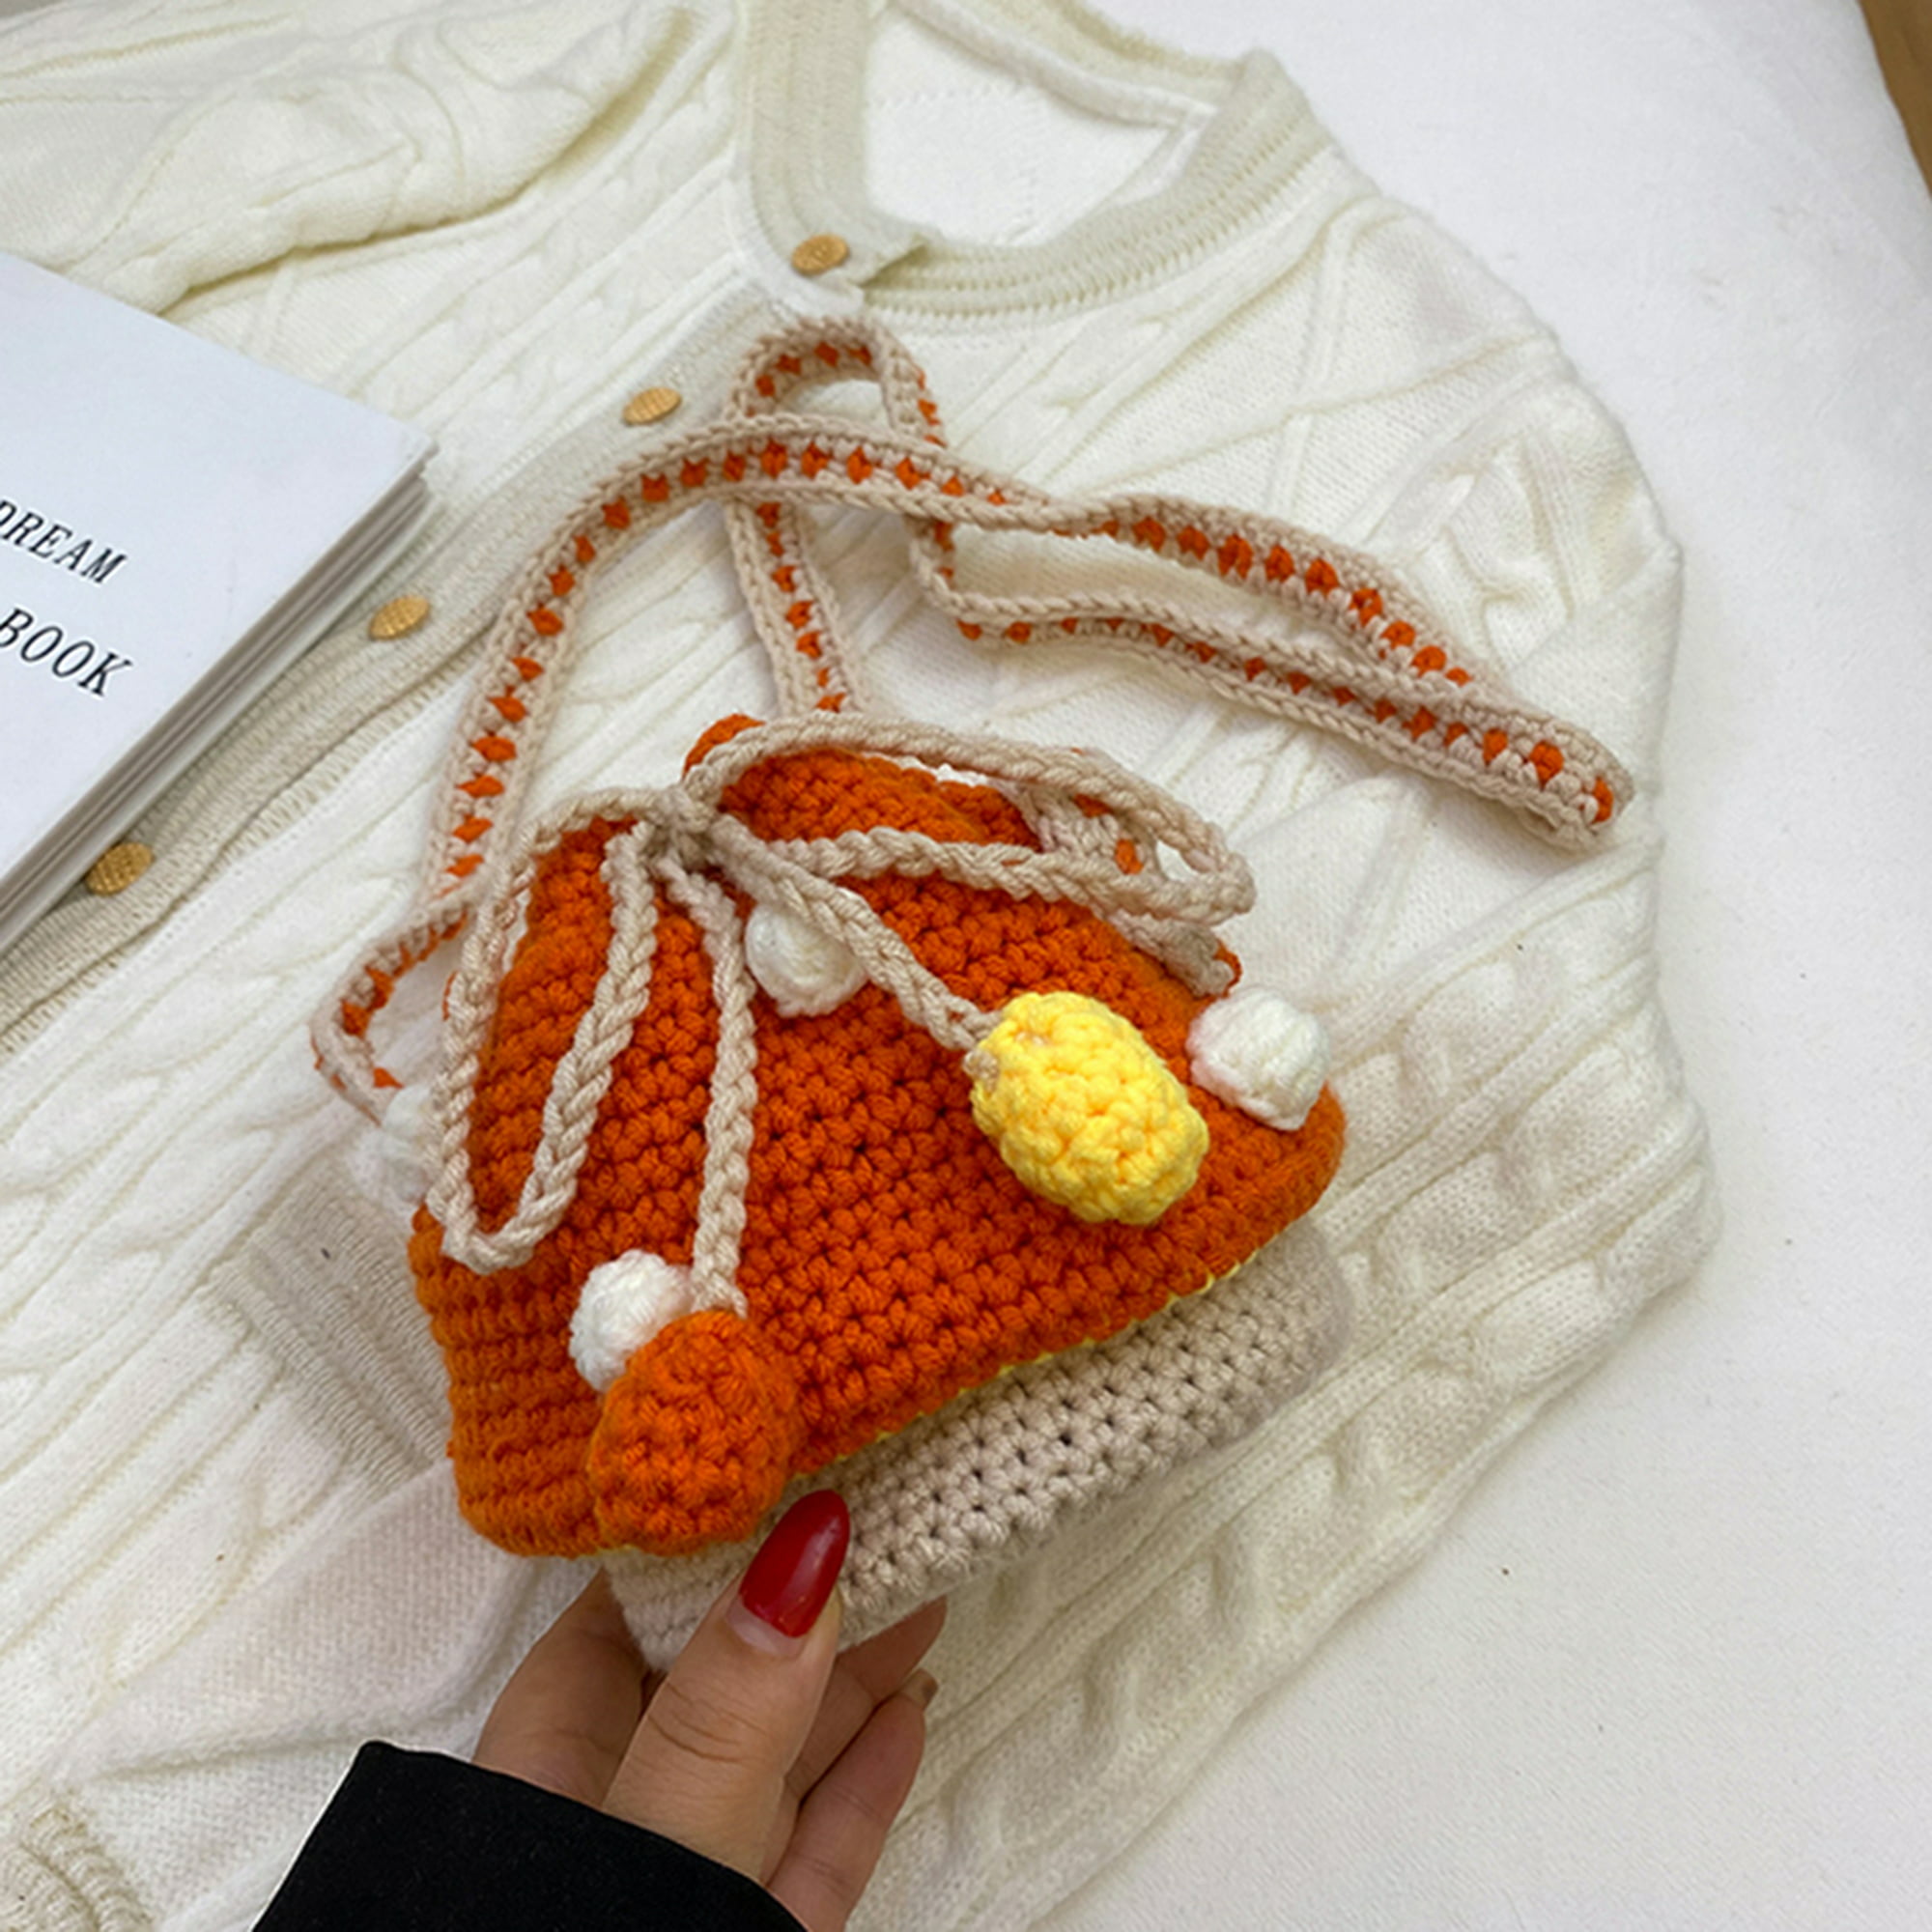 Hermès lanza un bolso de piel orgánica a base de hongos